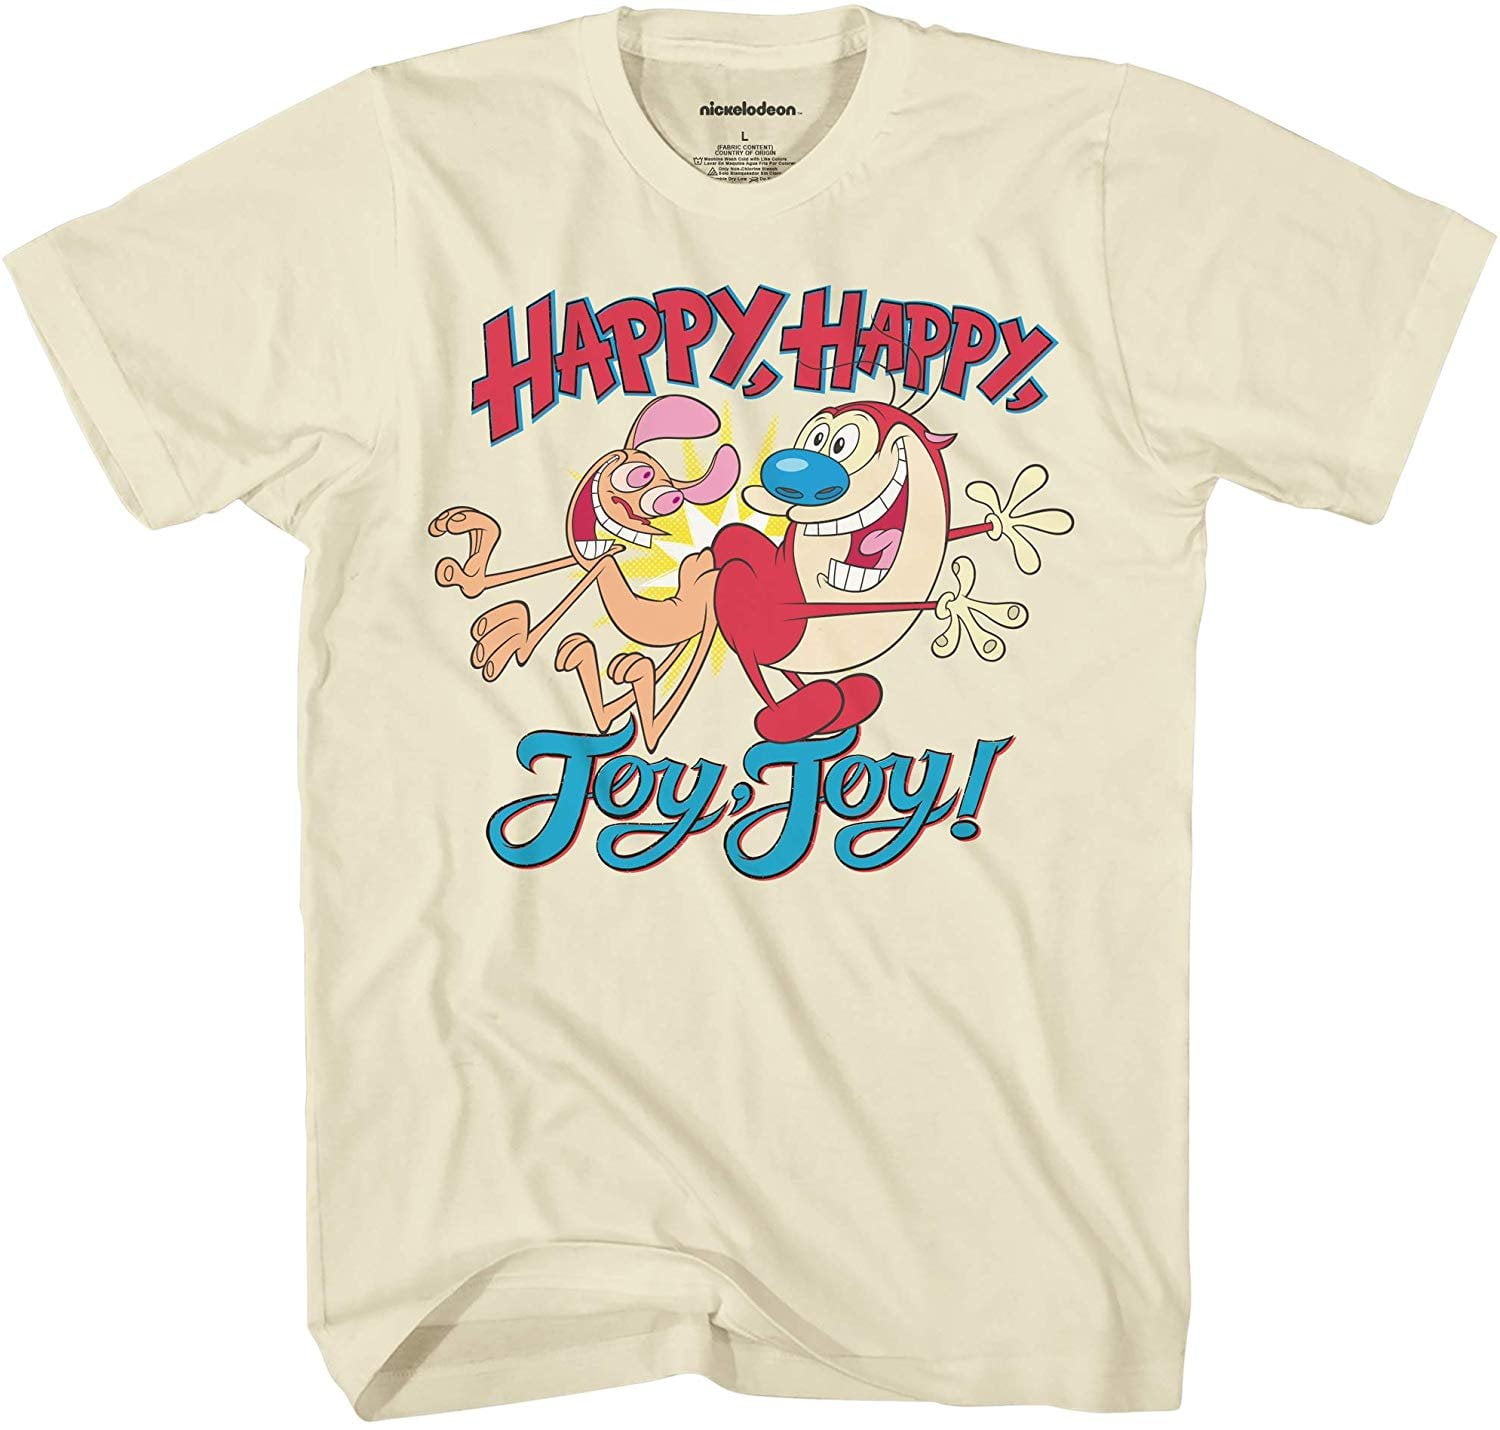 Nickelodeon - Nickelodeon Mens 90's Classic Shirt - Ren & Stimpy Happy ...